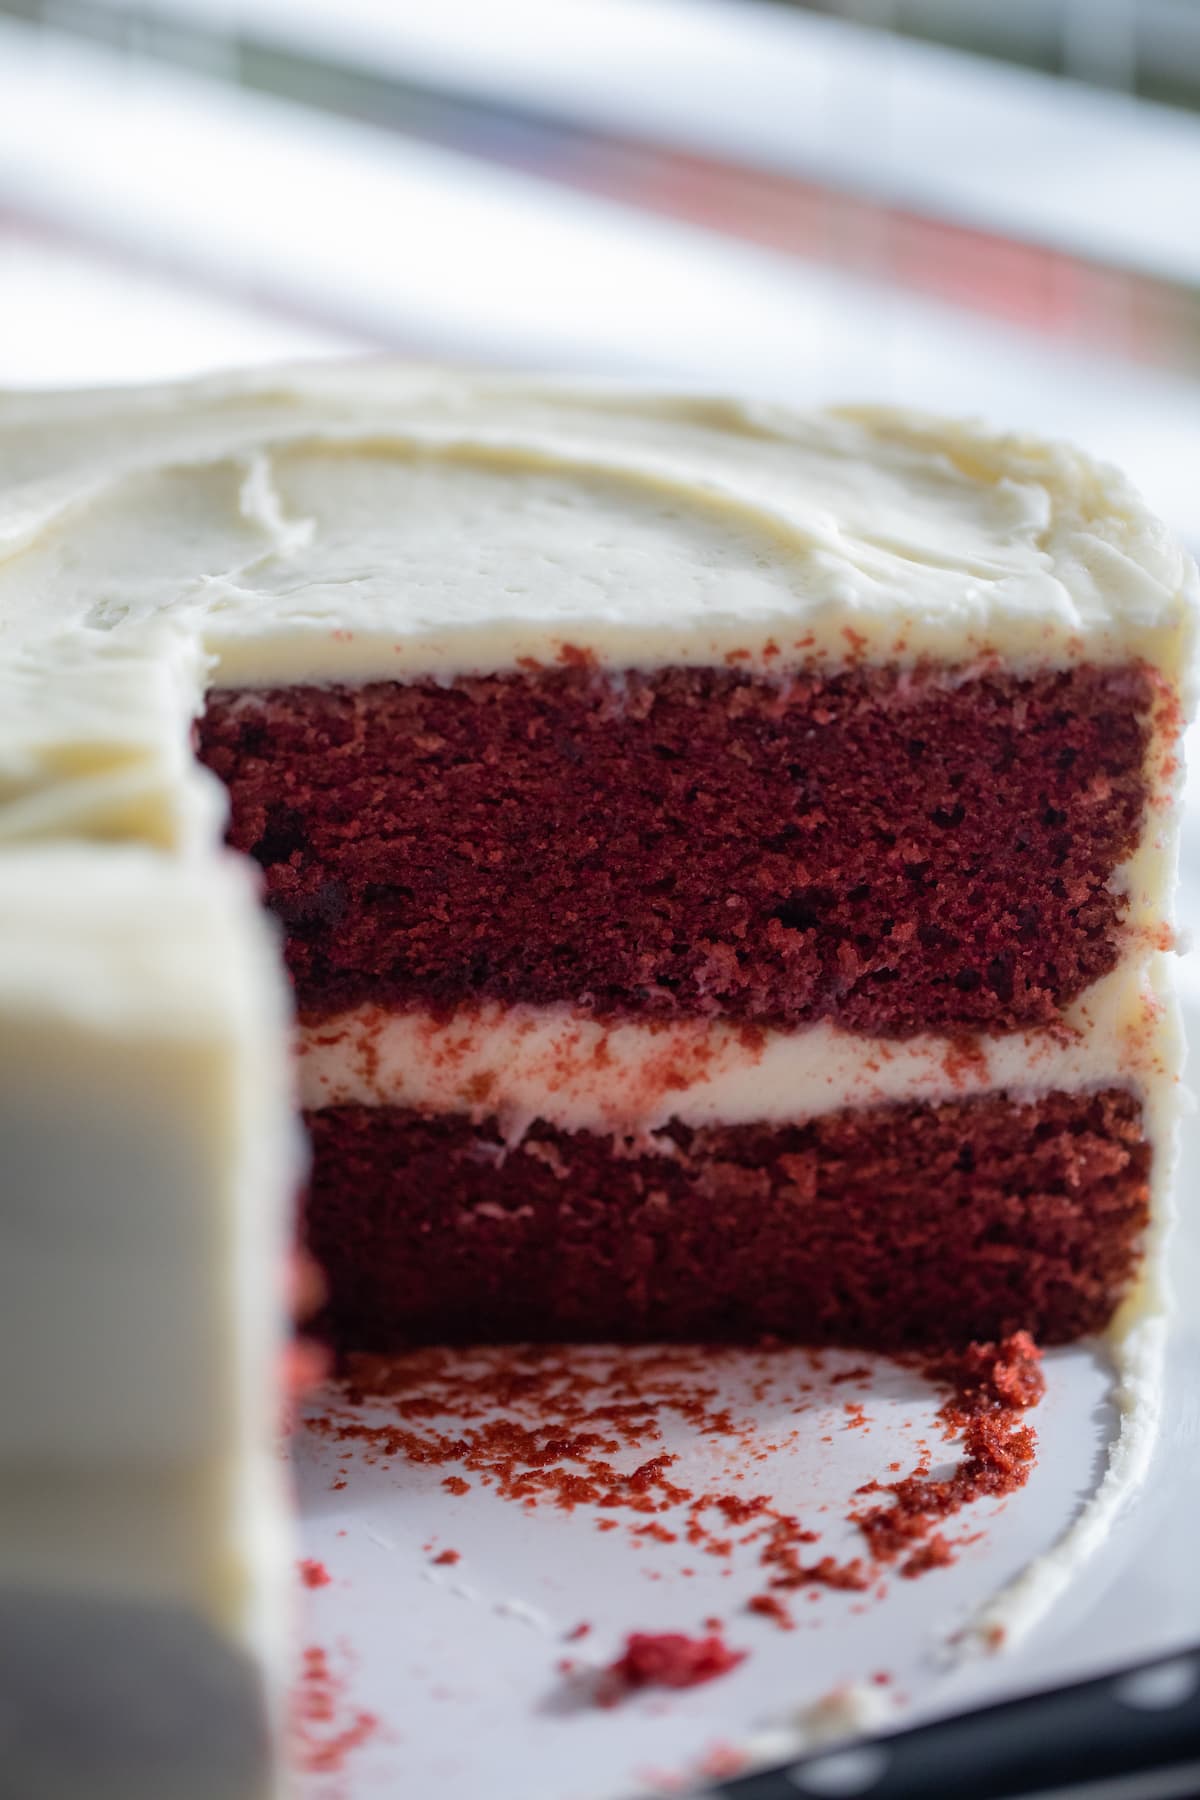 inside of red velvet cake